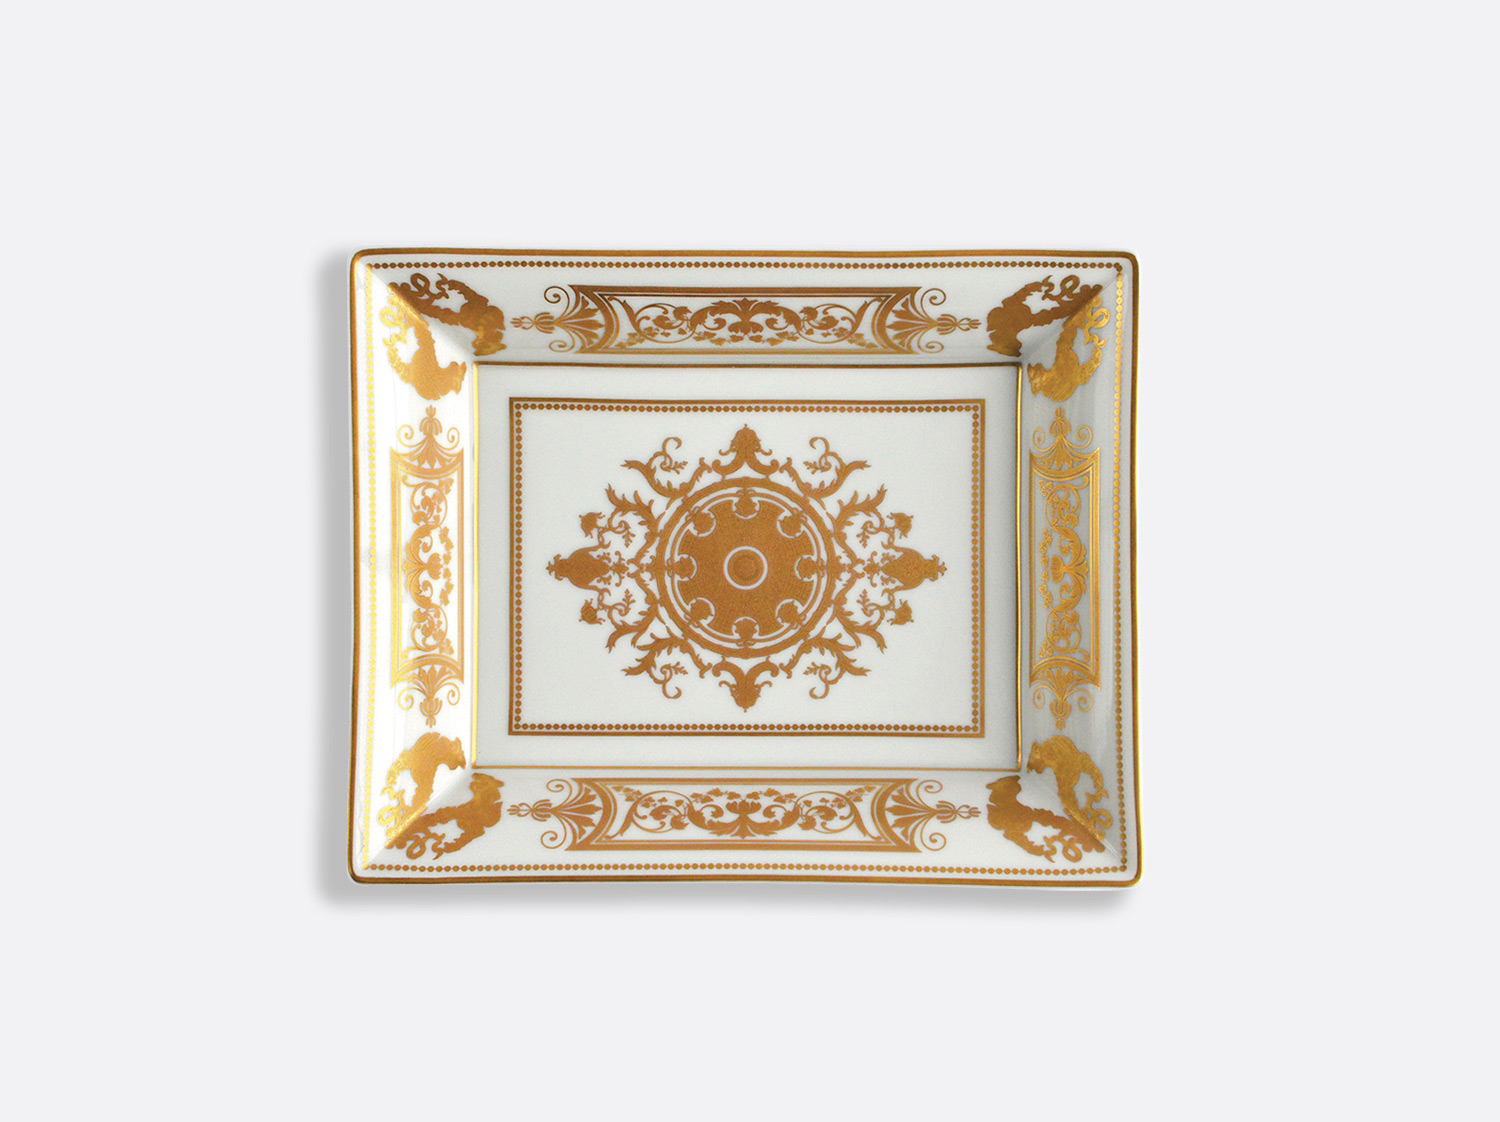 Vide-poches 20 x 16 cm en porcelaine de la collection Aux Rois Or Bernardaud